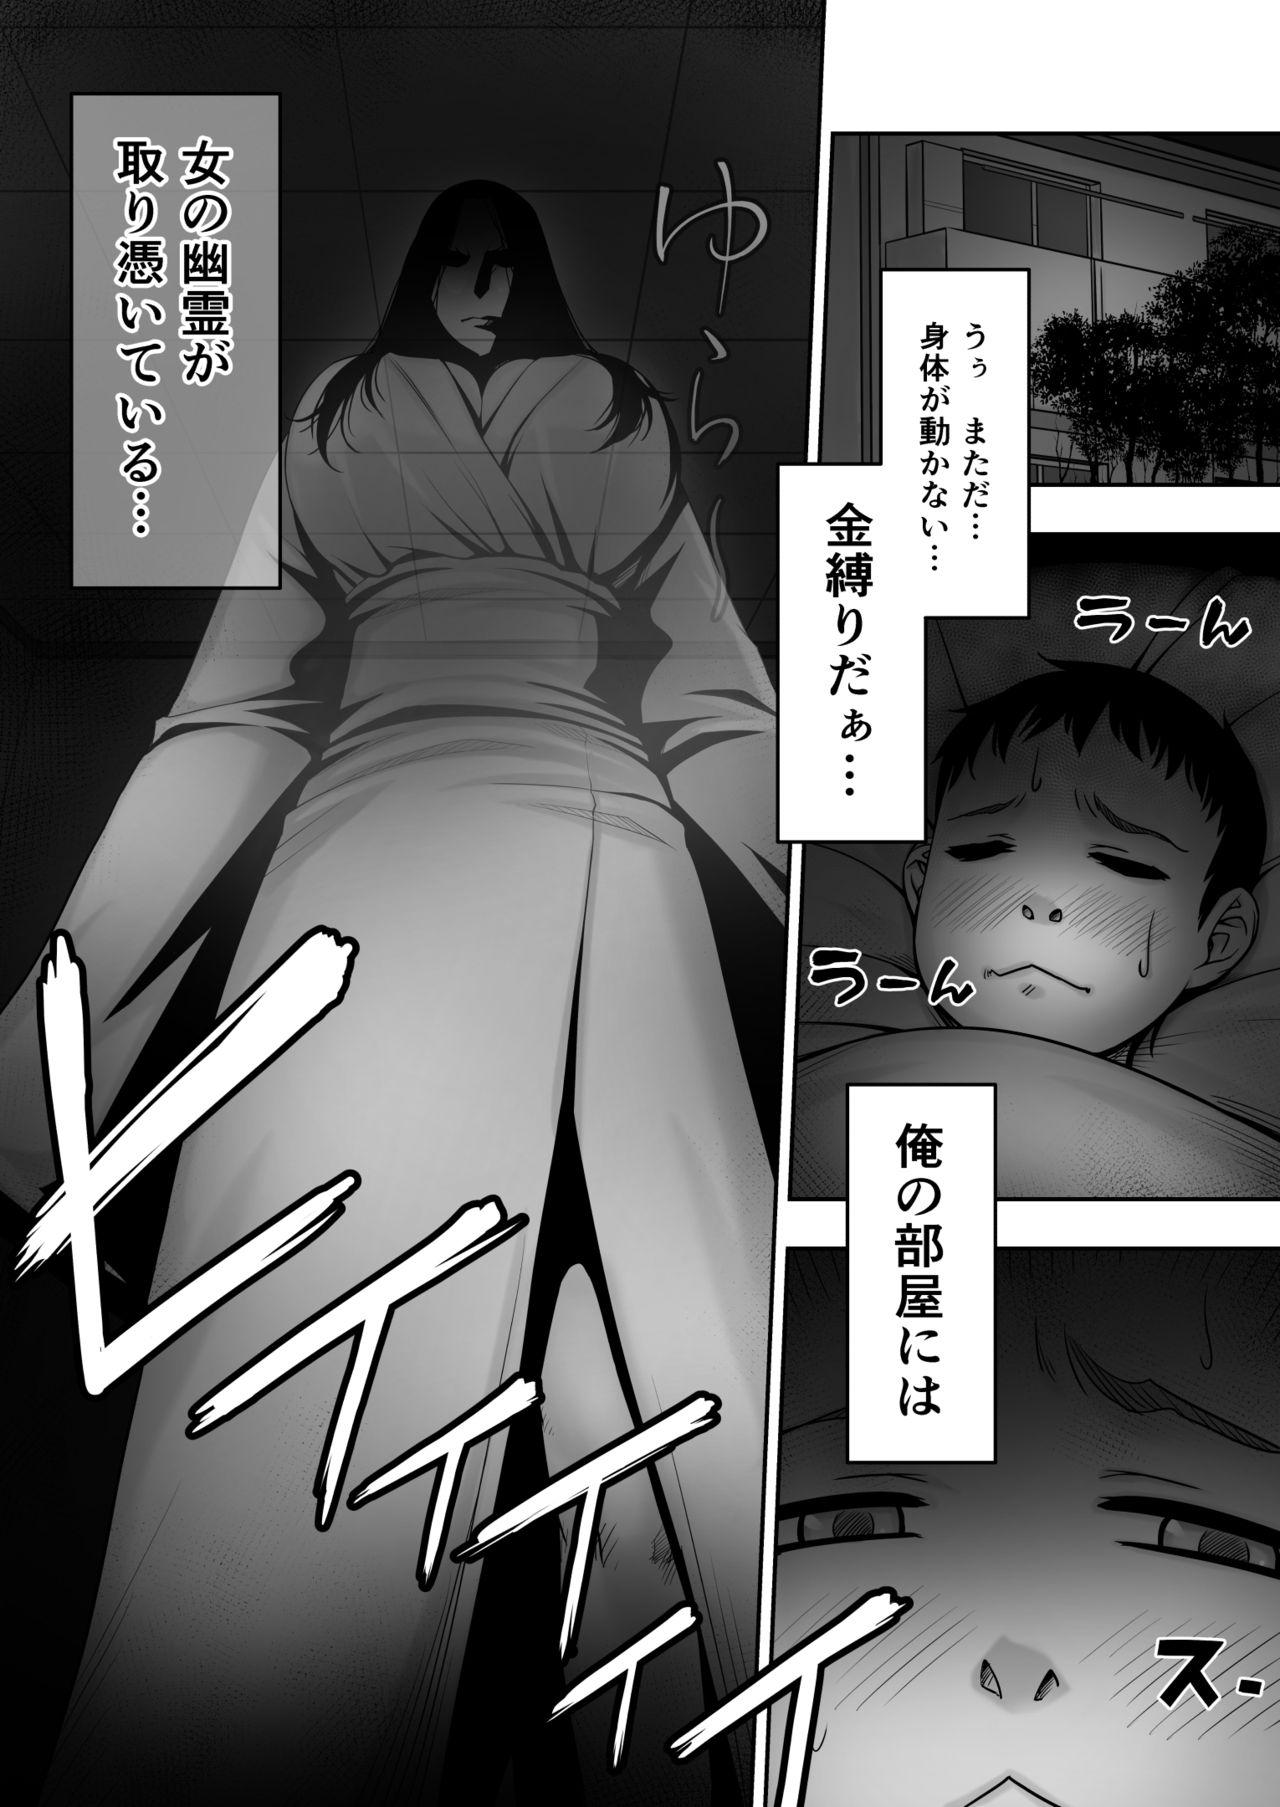 Spooning Dōtei ga heya ni tori tsuite iru on'na yūrei ni gyaku kanashibari o kaketa kekka - Original Gay Friend - Page 2